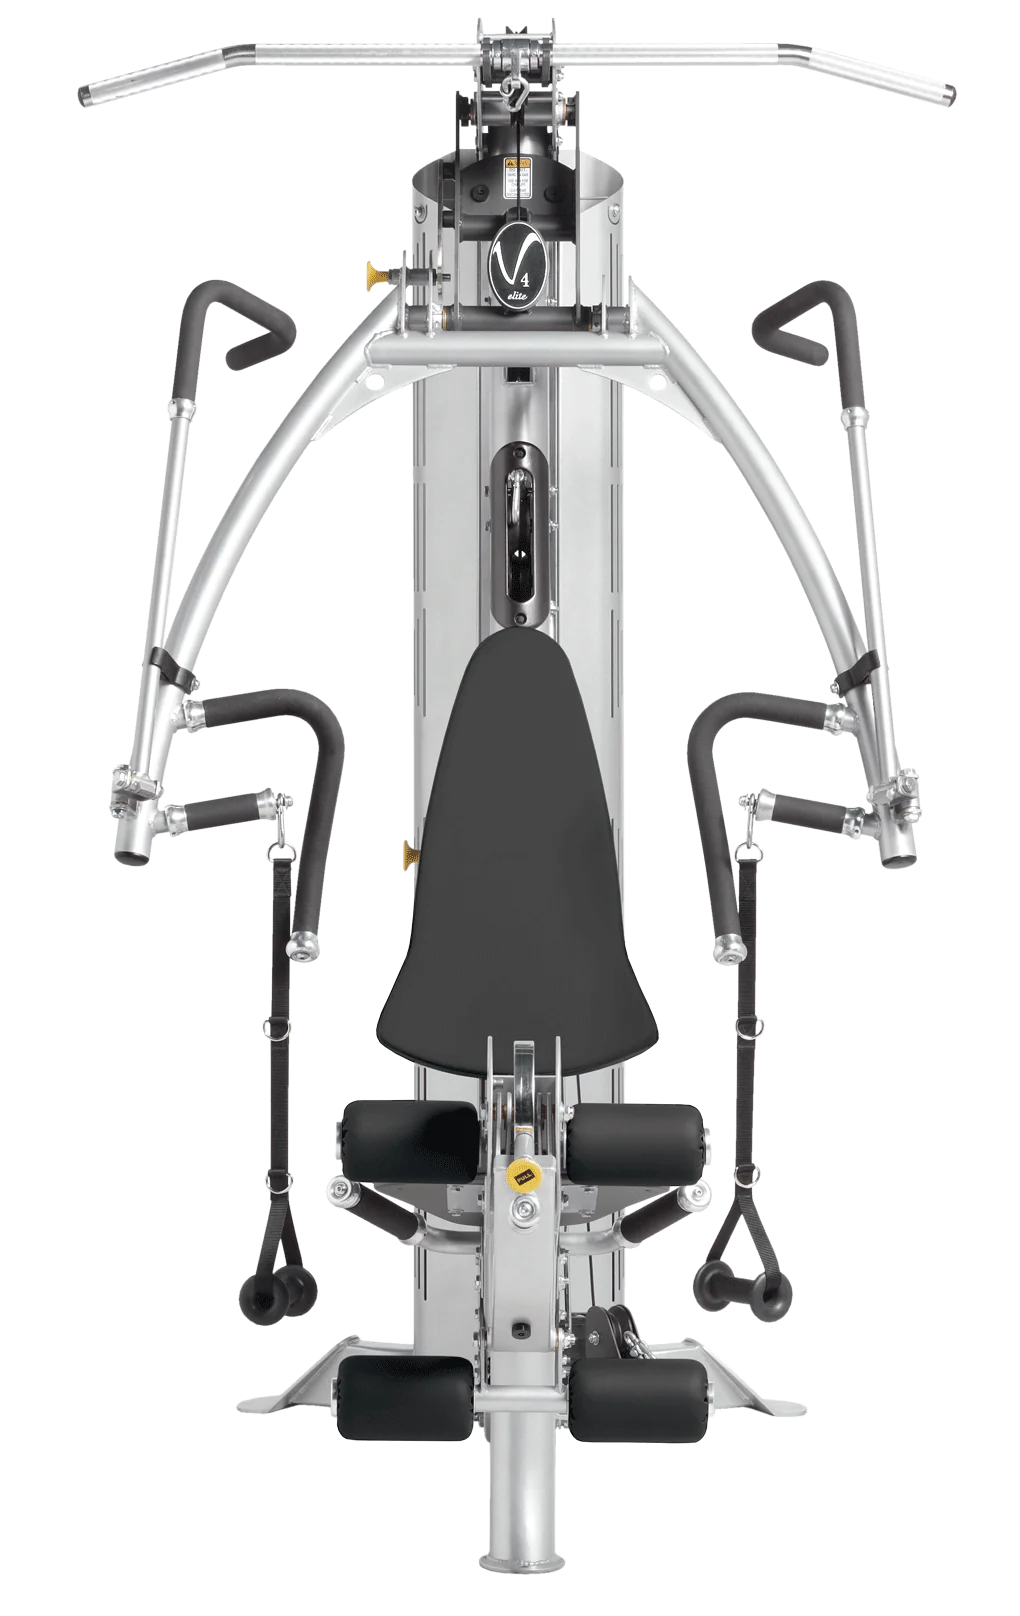 Hoist V4 Elite Home Gym w/ Articulating Press Arm